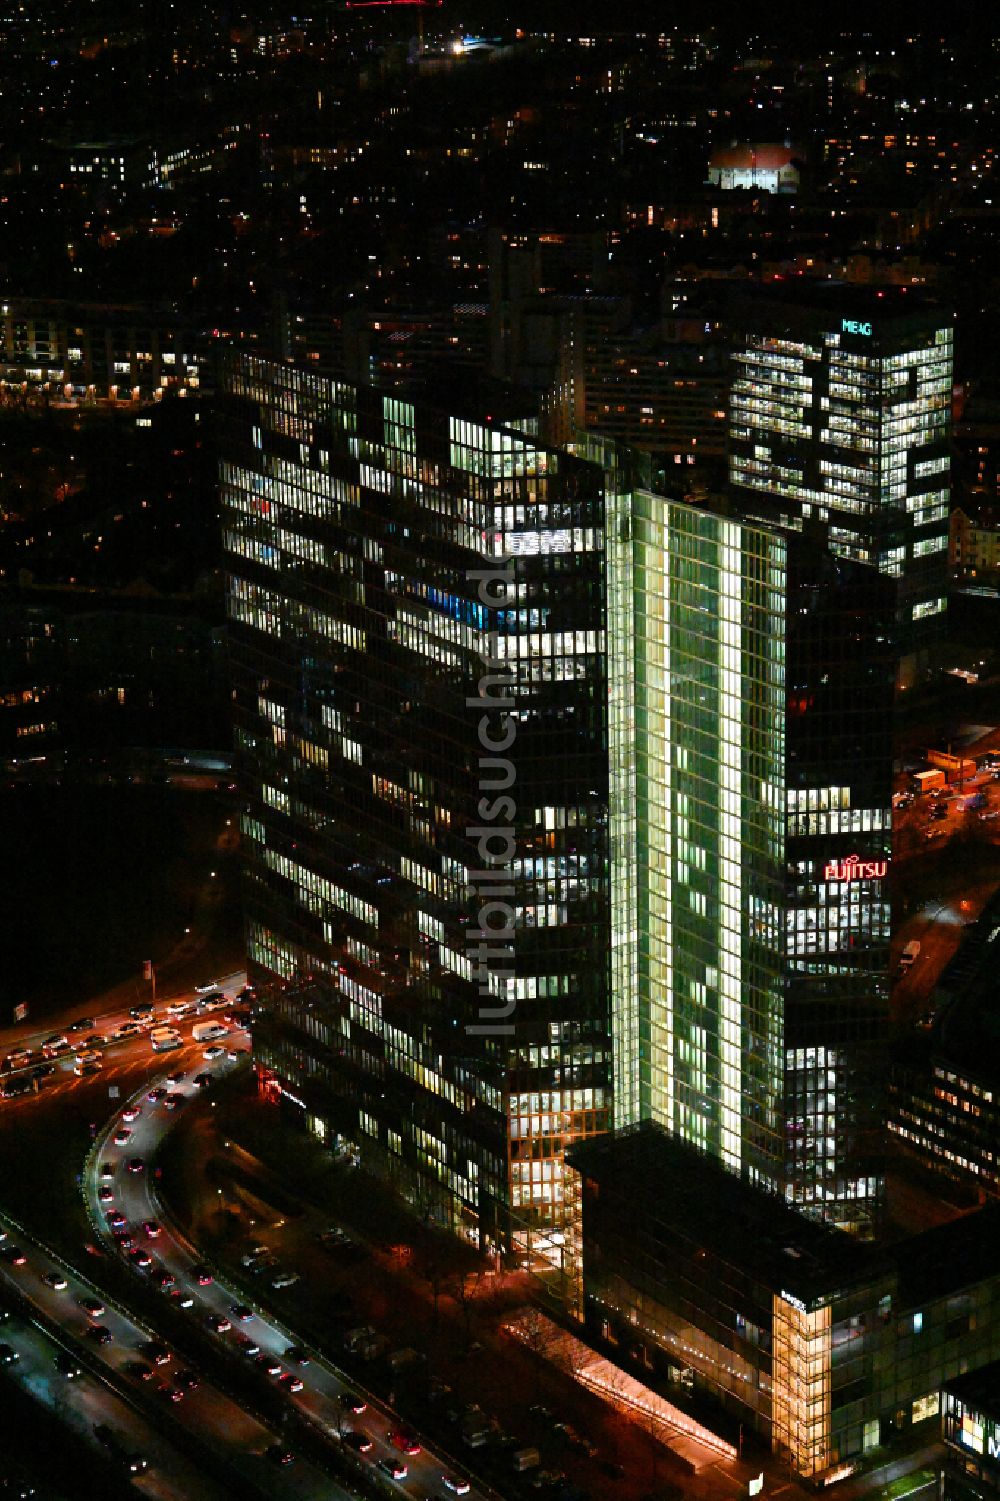 Nacht-Luftaufnahme München - Nachtluftbild Gebäudekomplex HighLight Towers im Ortsteil Schwabing-Freimann in München im Bundesland Bayern, Deutschland